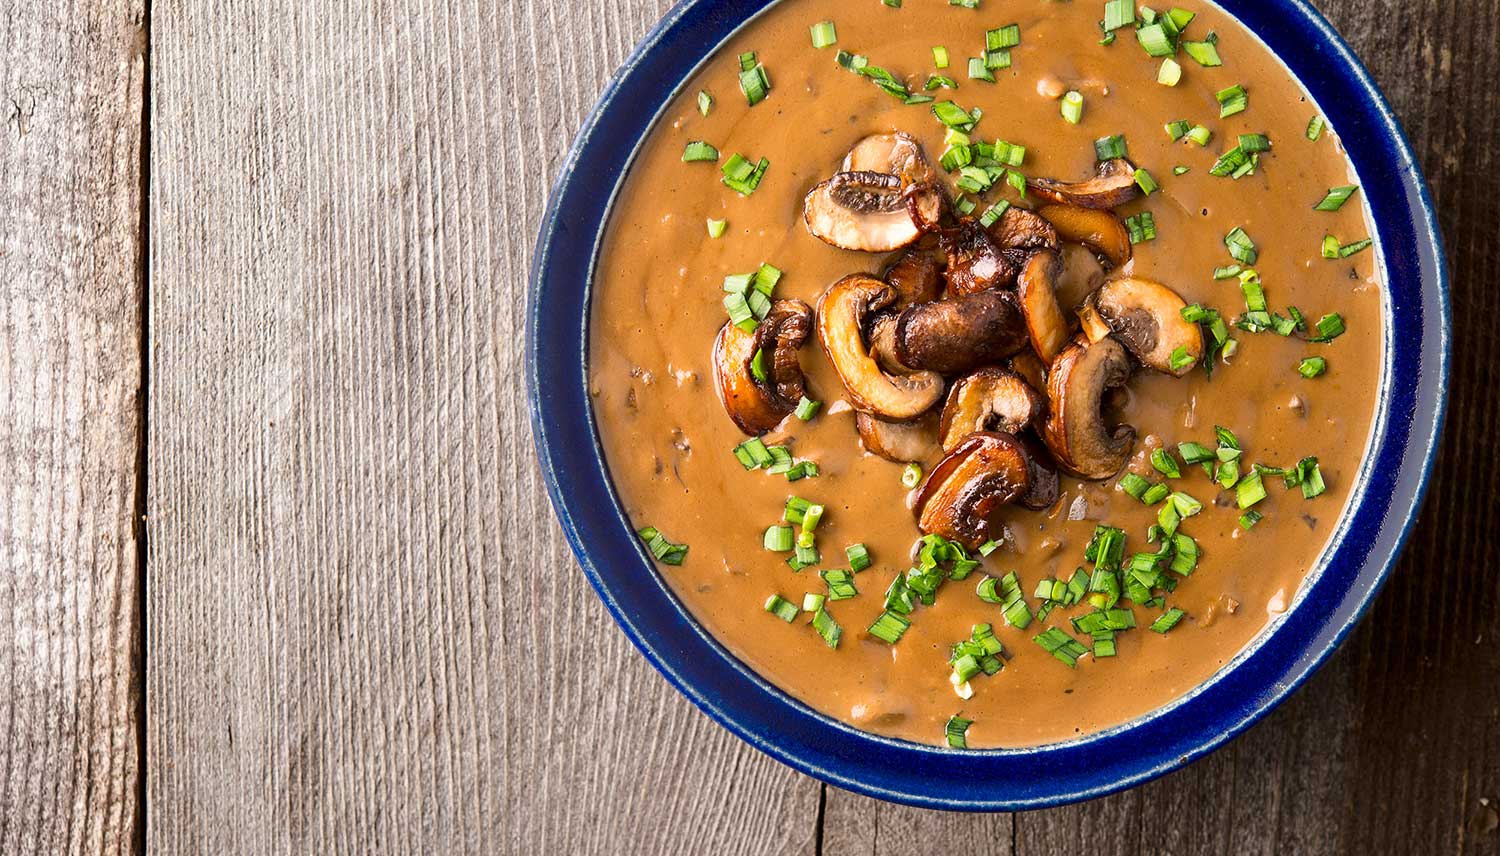 mushroom bisque recipe in a bowl